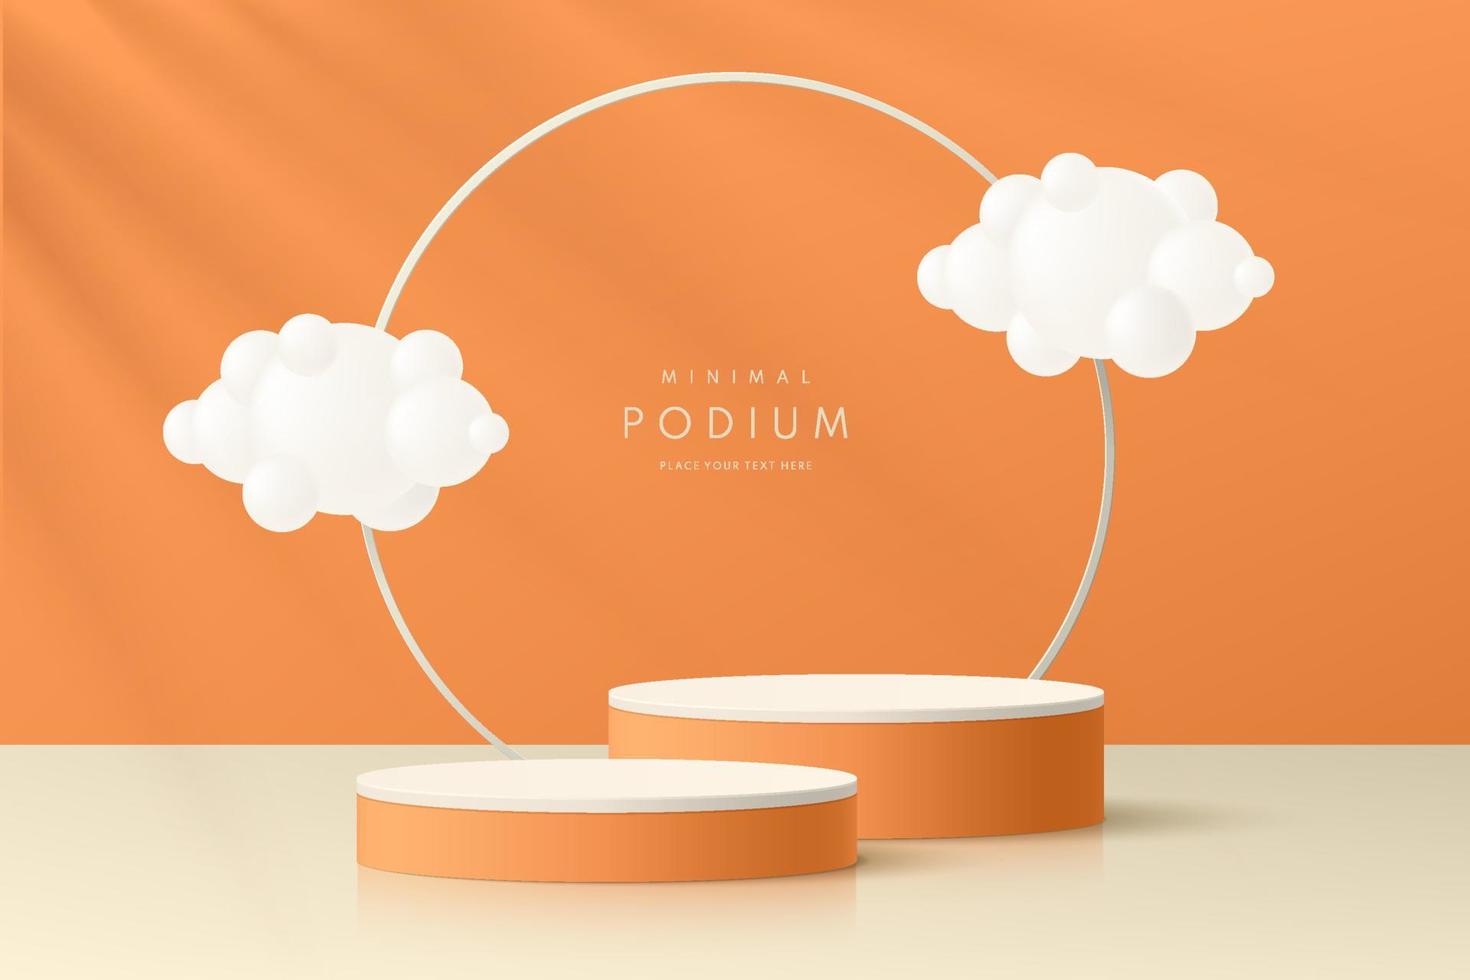 realistisk orange och vit 3d cylinder piedestal podium set med ring och moln flygande. abstrakt minimal sommarscen för mockupprodukter, scen för showcase, marknadsföringsdisplay. vektor geometriska former